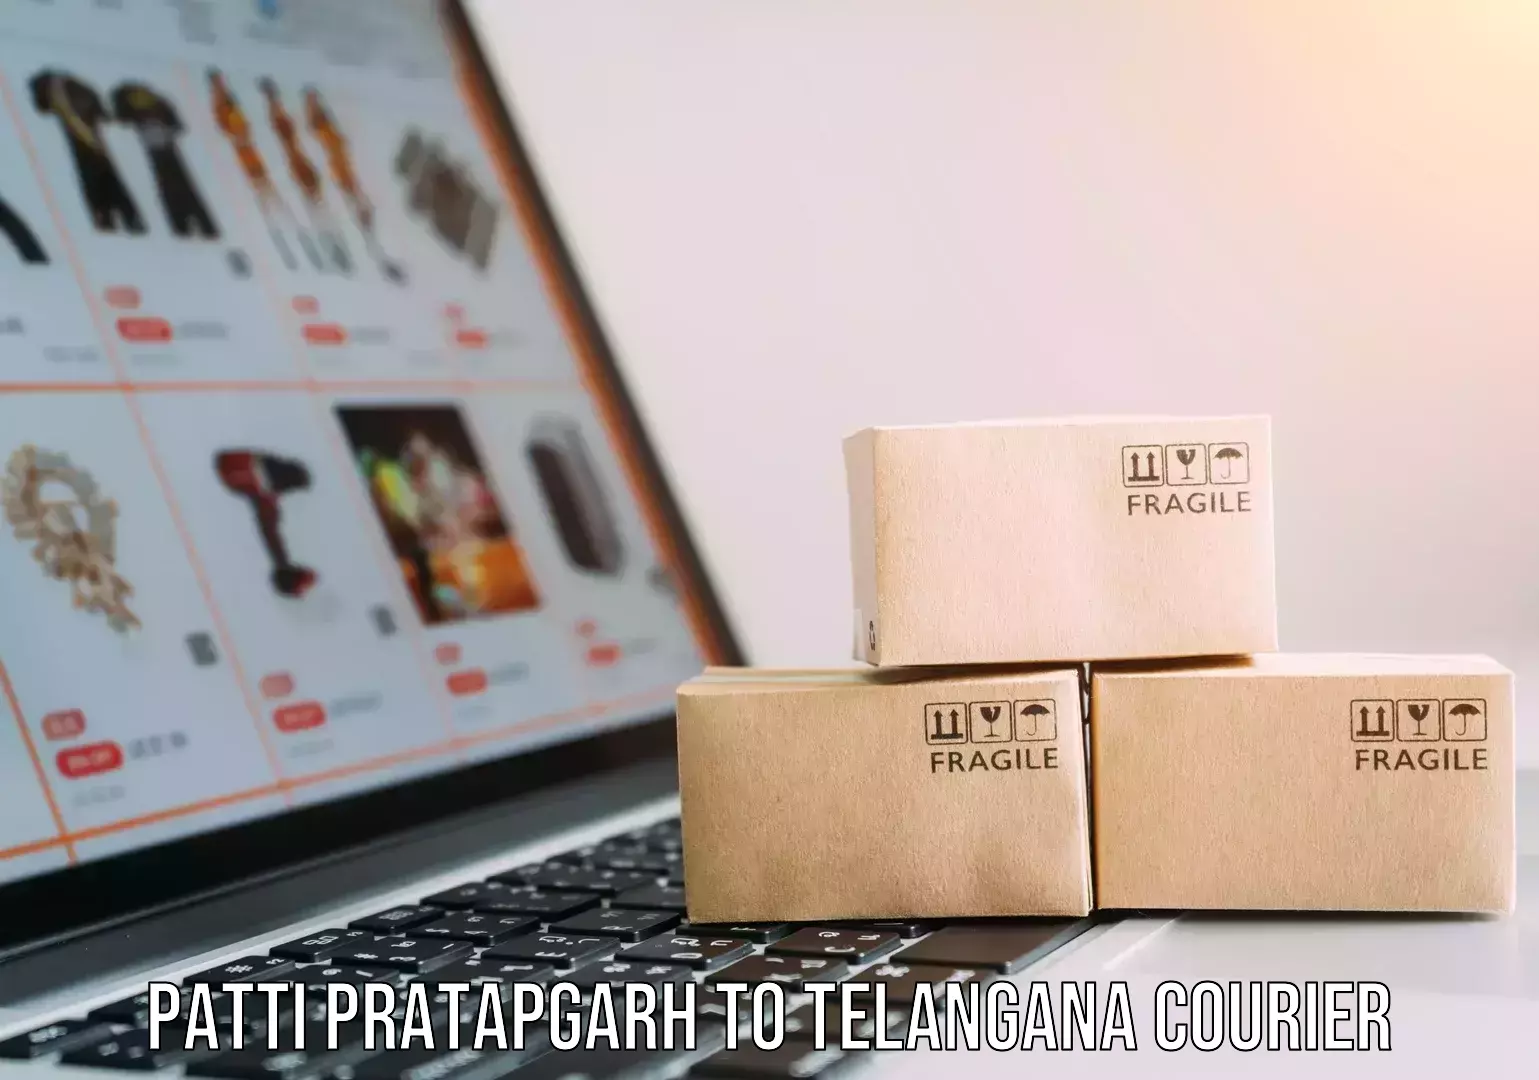 Efficient moving and packing Patti Pratapgarh to Telangana